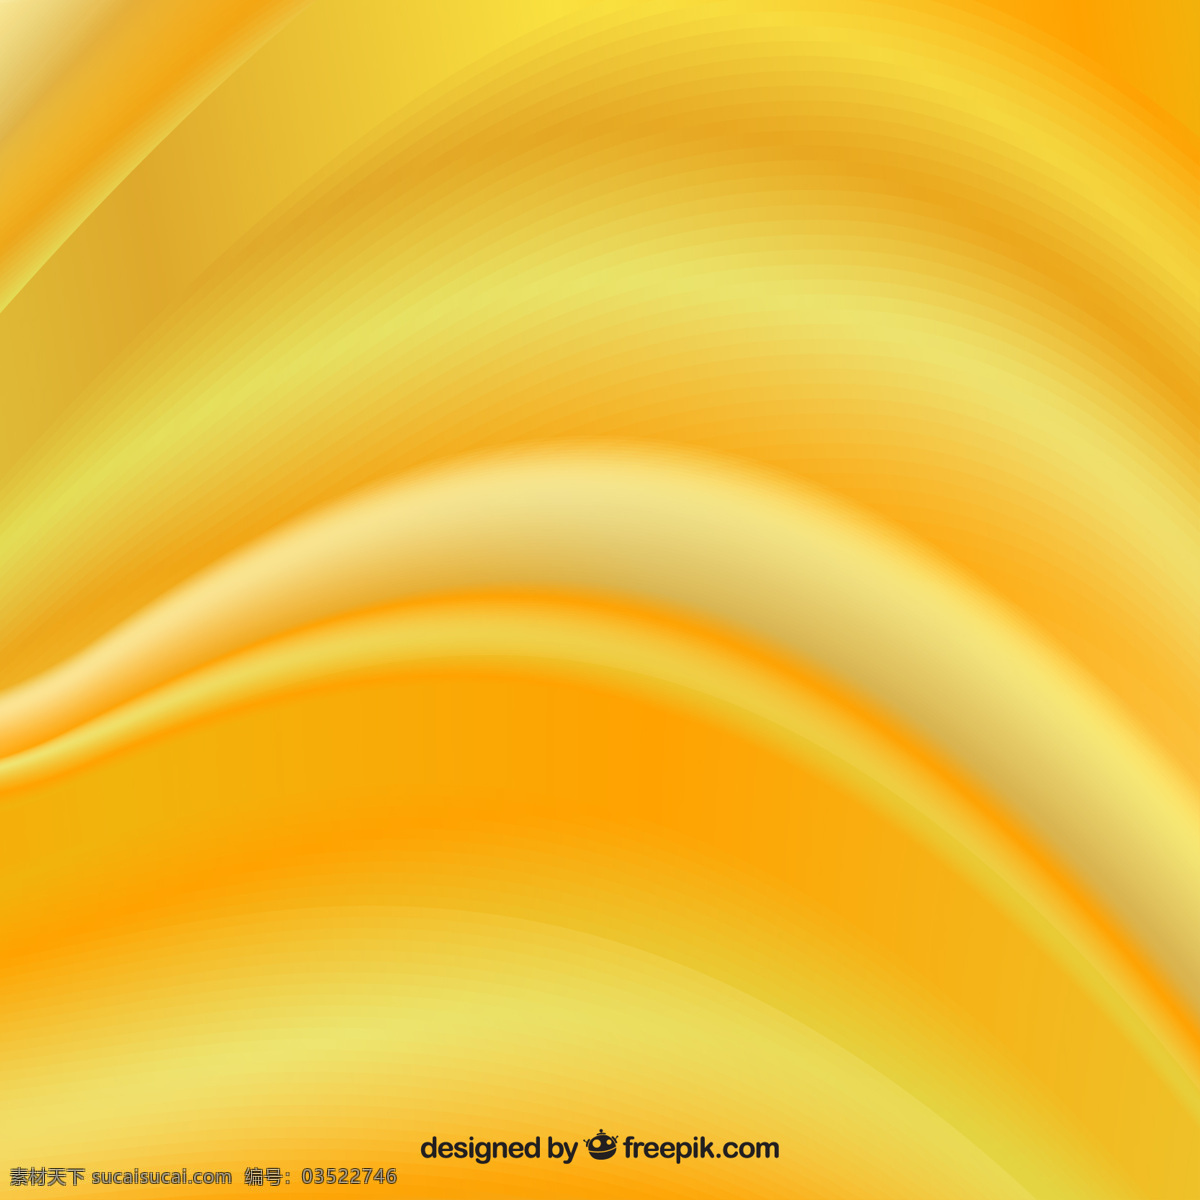 黄绢的背景 背景 抽象 黄色 黄色背景 织物 丝 柔软 波浪 丝滑 起伏